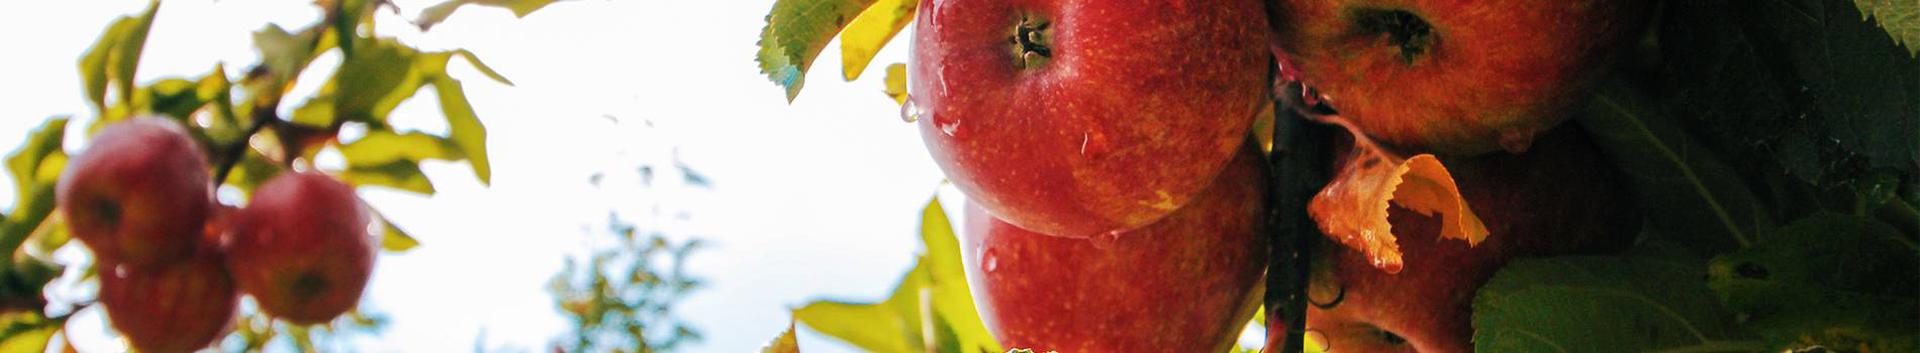 Nordestland OÜ loodi 2013. aastal. Nordestland OÜ on peamiselt põllumajandusega tegelev ettevõte. Tooteks on Eestis mahekasvatatud kirsid, õunad ja seened....